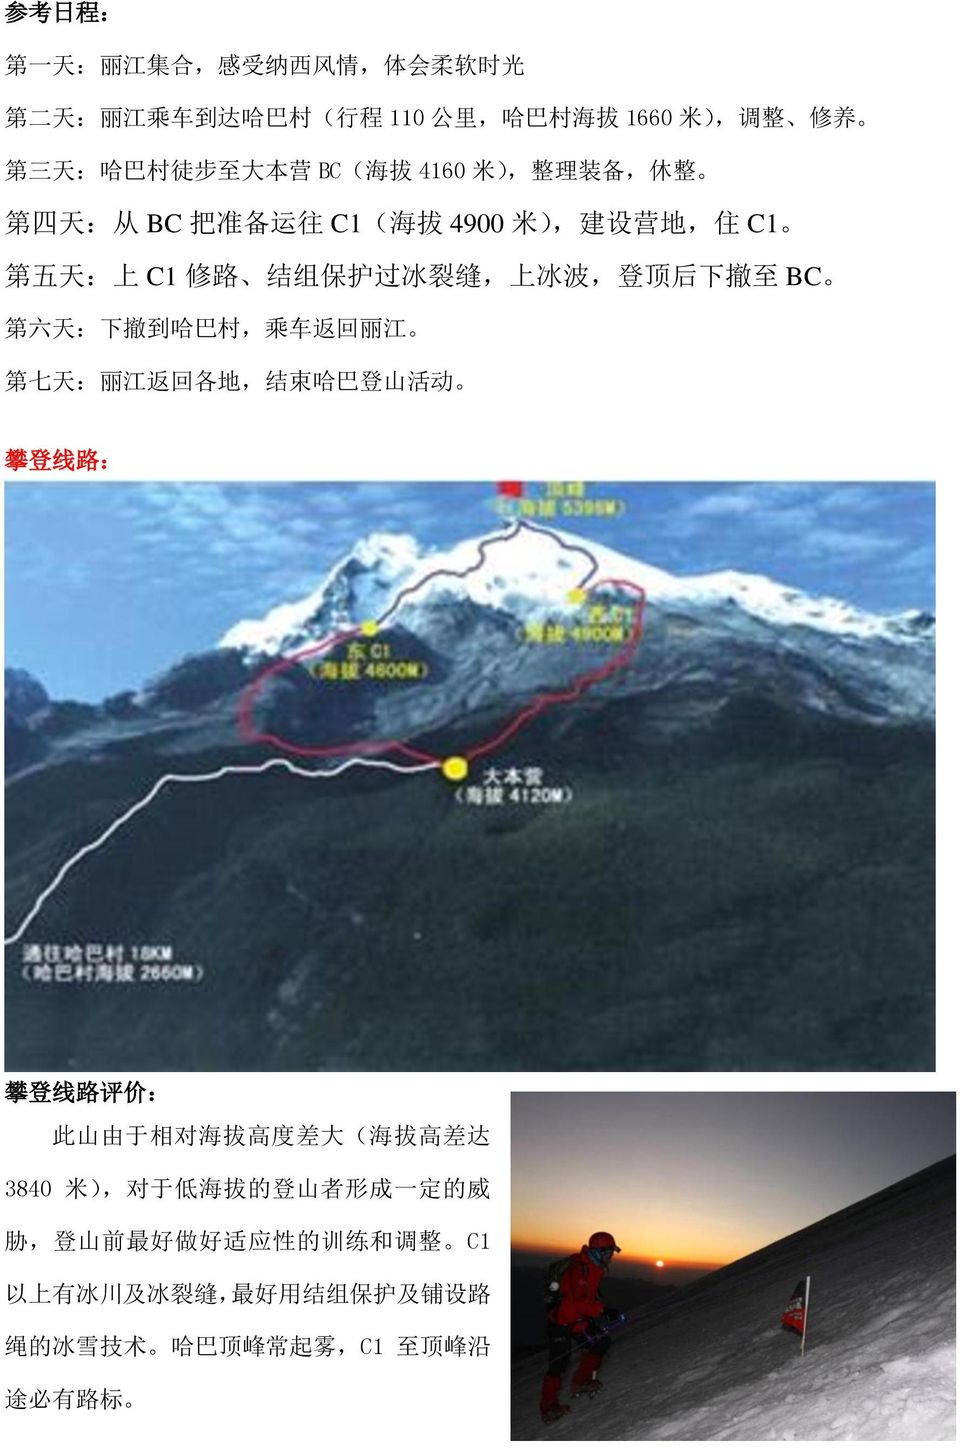 六 天 : 下 撤 到 哈 巴 村, 乘 车 返 回 丽 江 第 七 天 : 丽 江 返 回 各 地, 结 束 哈 巴 登 山 活 动 攀 登 线 路 : 攀 登 线 路 评 价 : 此 山 由 于 相 对 海 拔 高 度 差 大 ( 海 拔 高 差 达 3840 米 ), 对 于 低 海